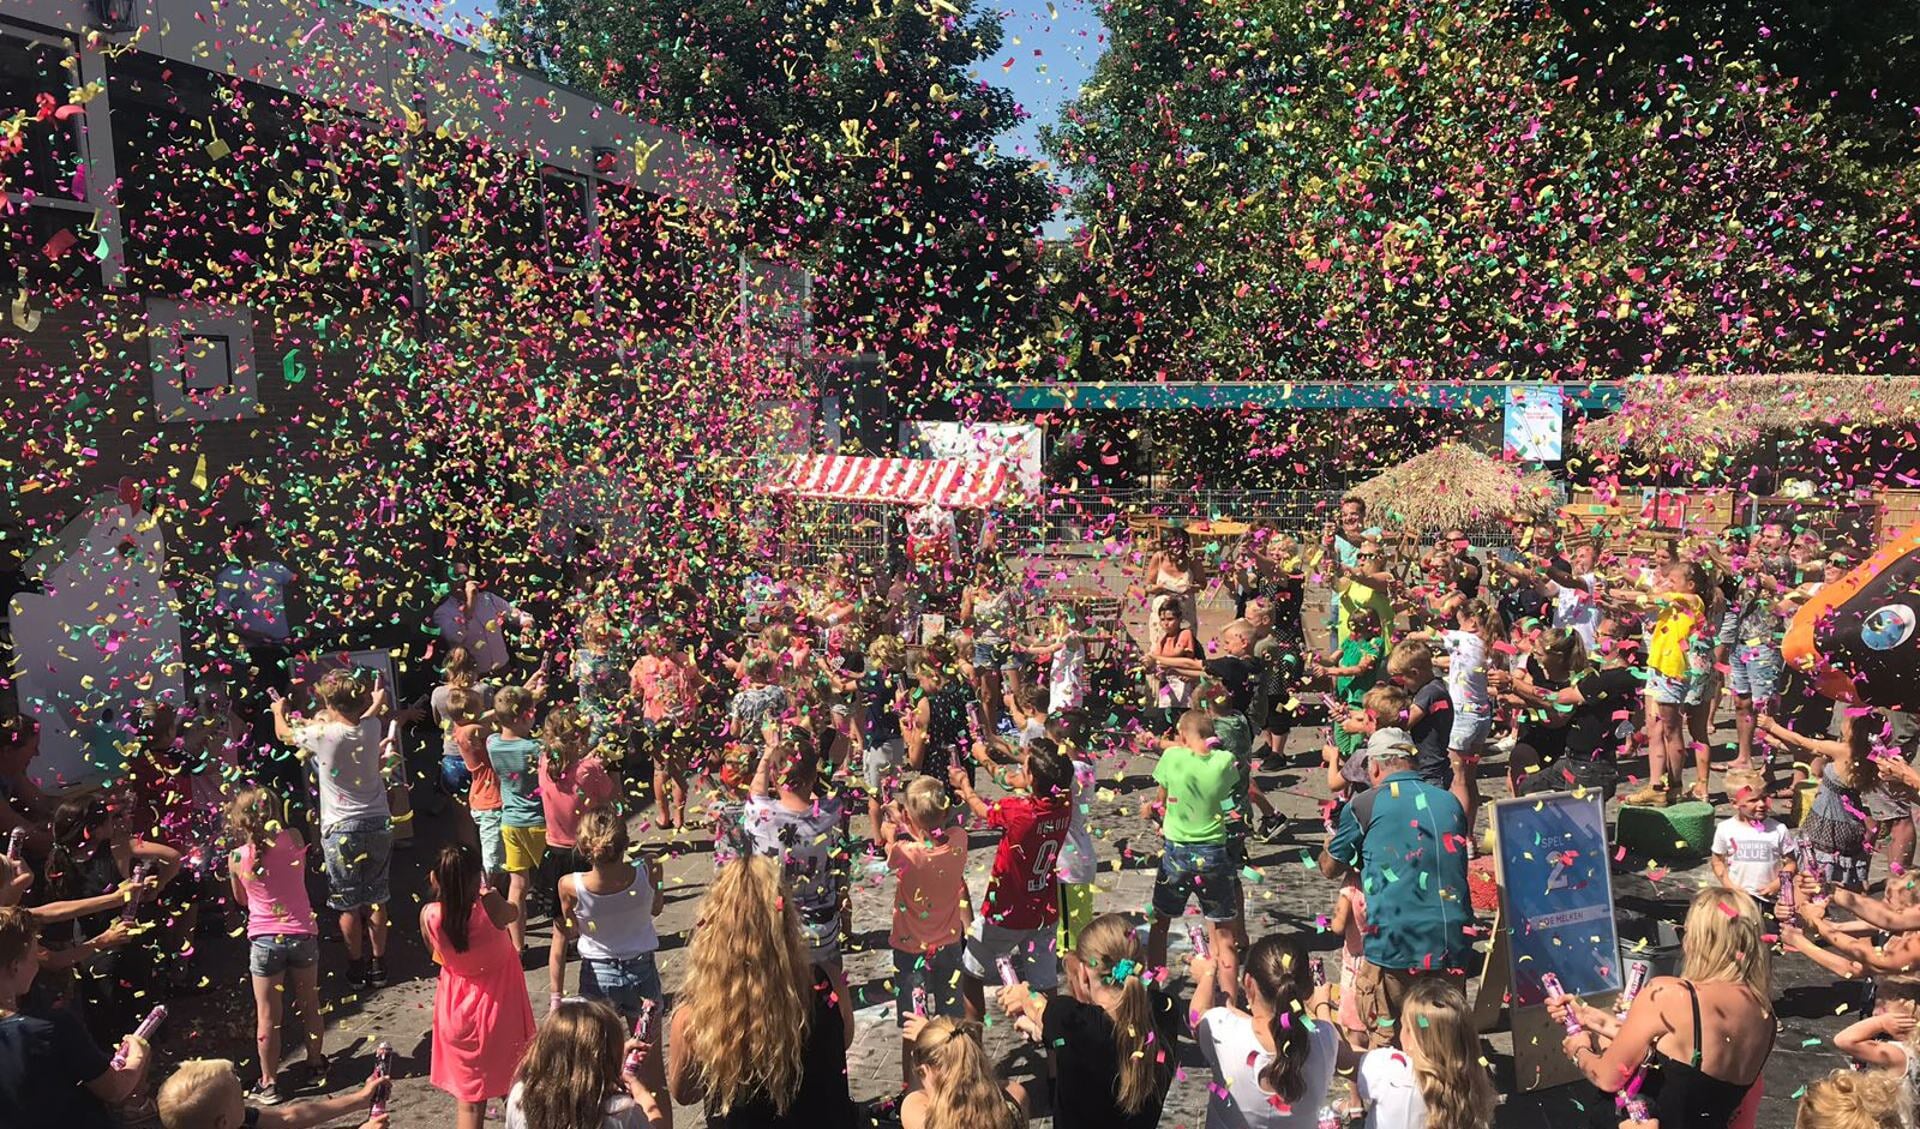 Na het openingswoord mochten alle kinderen confetti de lucht in schieten, waardoor het hele schoolplein kleurrijk versierd was. (Foto: aangeleverd)